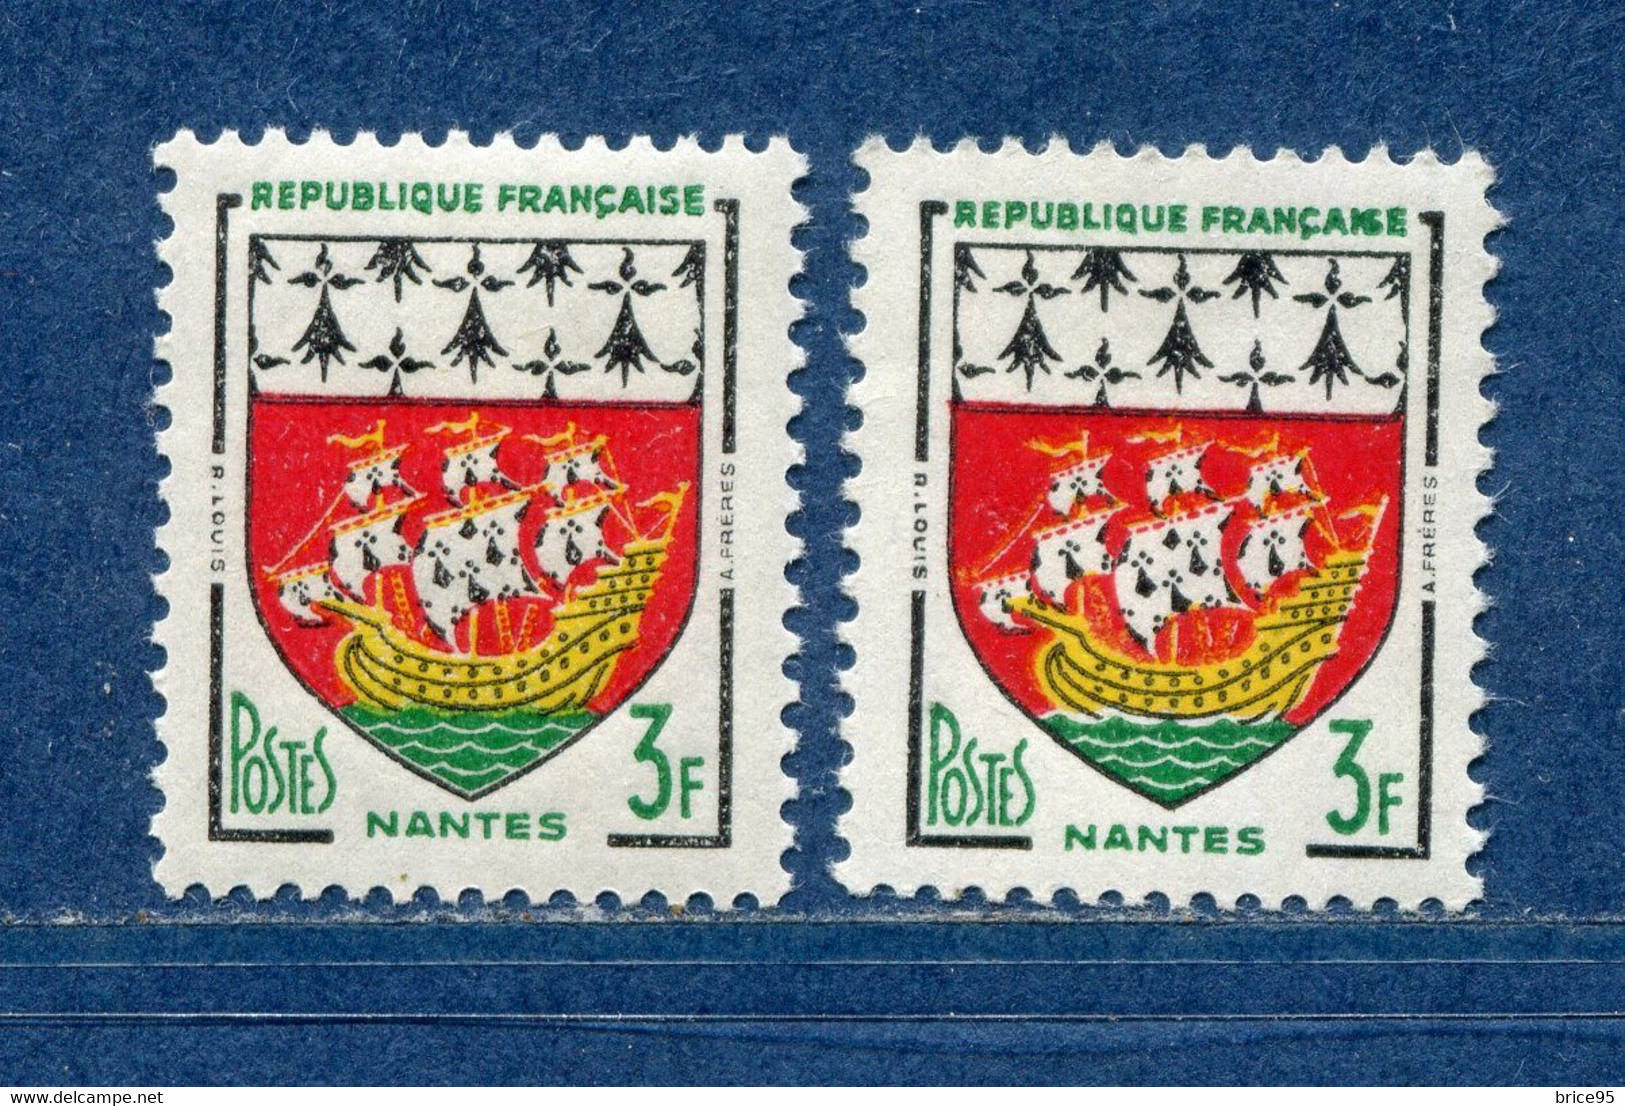 ⭐ France - Variété - YT N° 1185 - Couleurs - Pétouilles - Neuf Sans Charnière - 1958 ⭐ - Nuovi